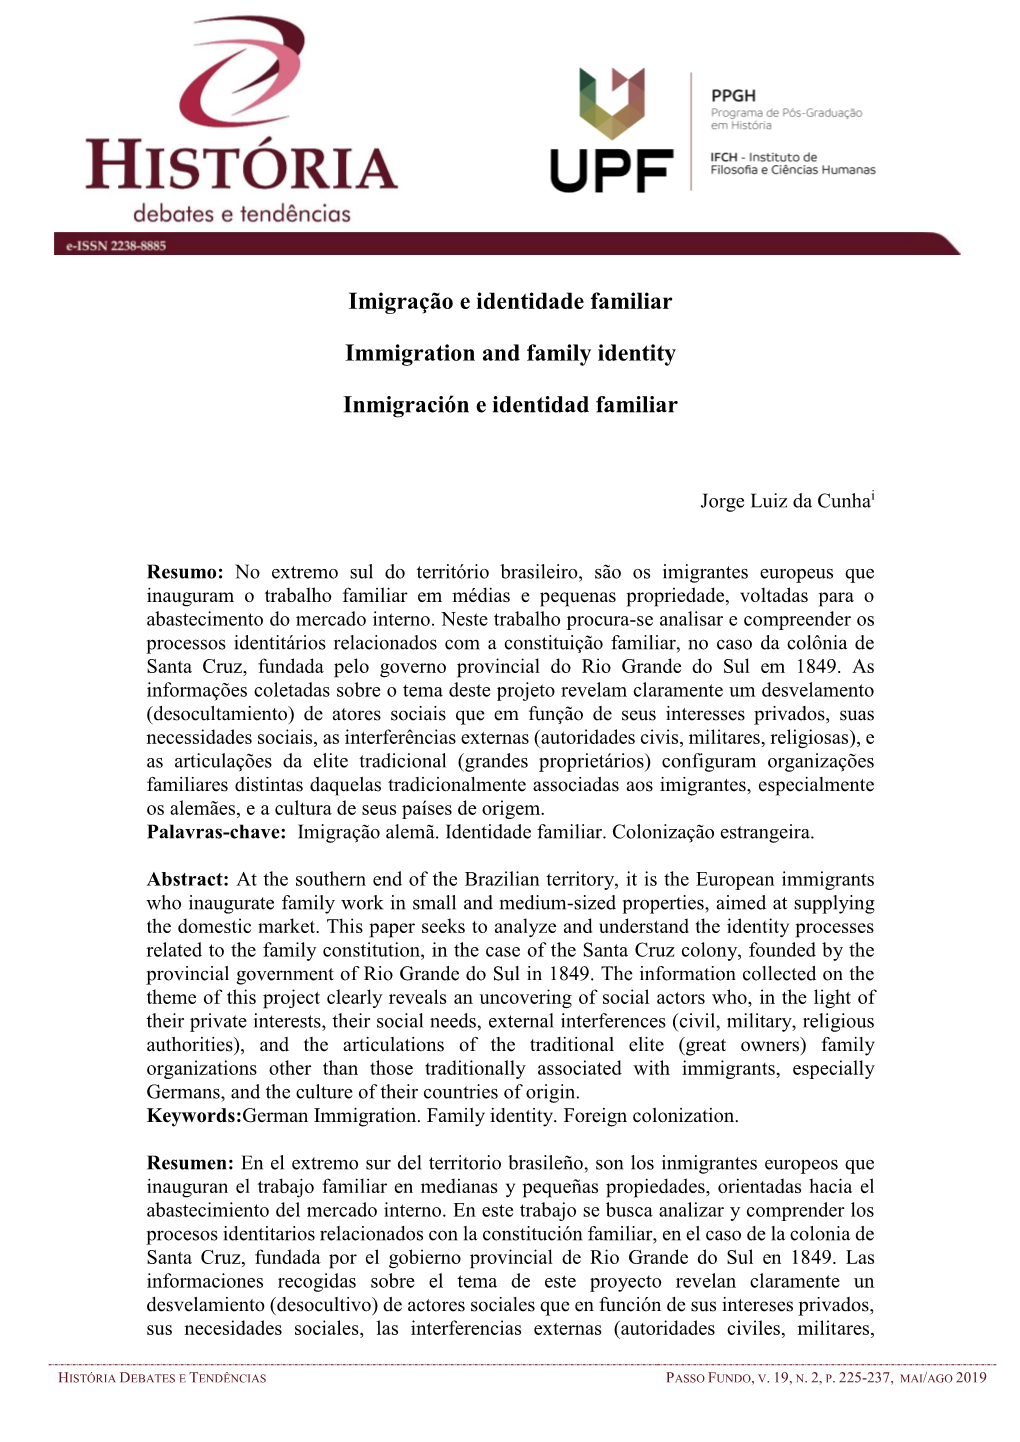 Imigração E Identidade Familiar Immigration and Family Identity